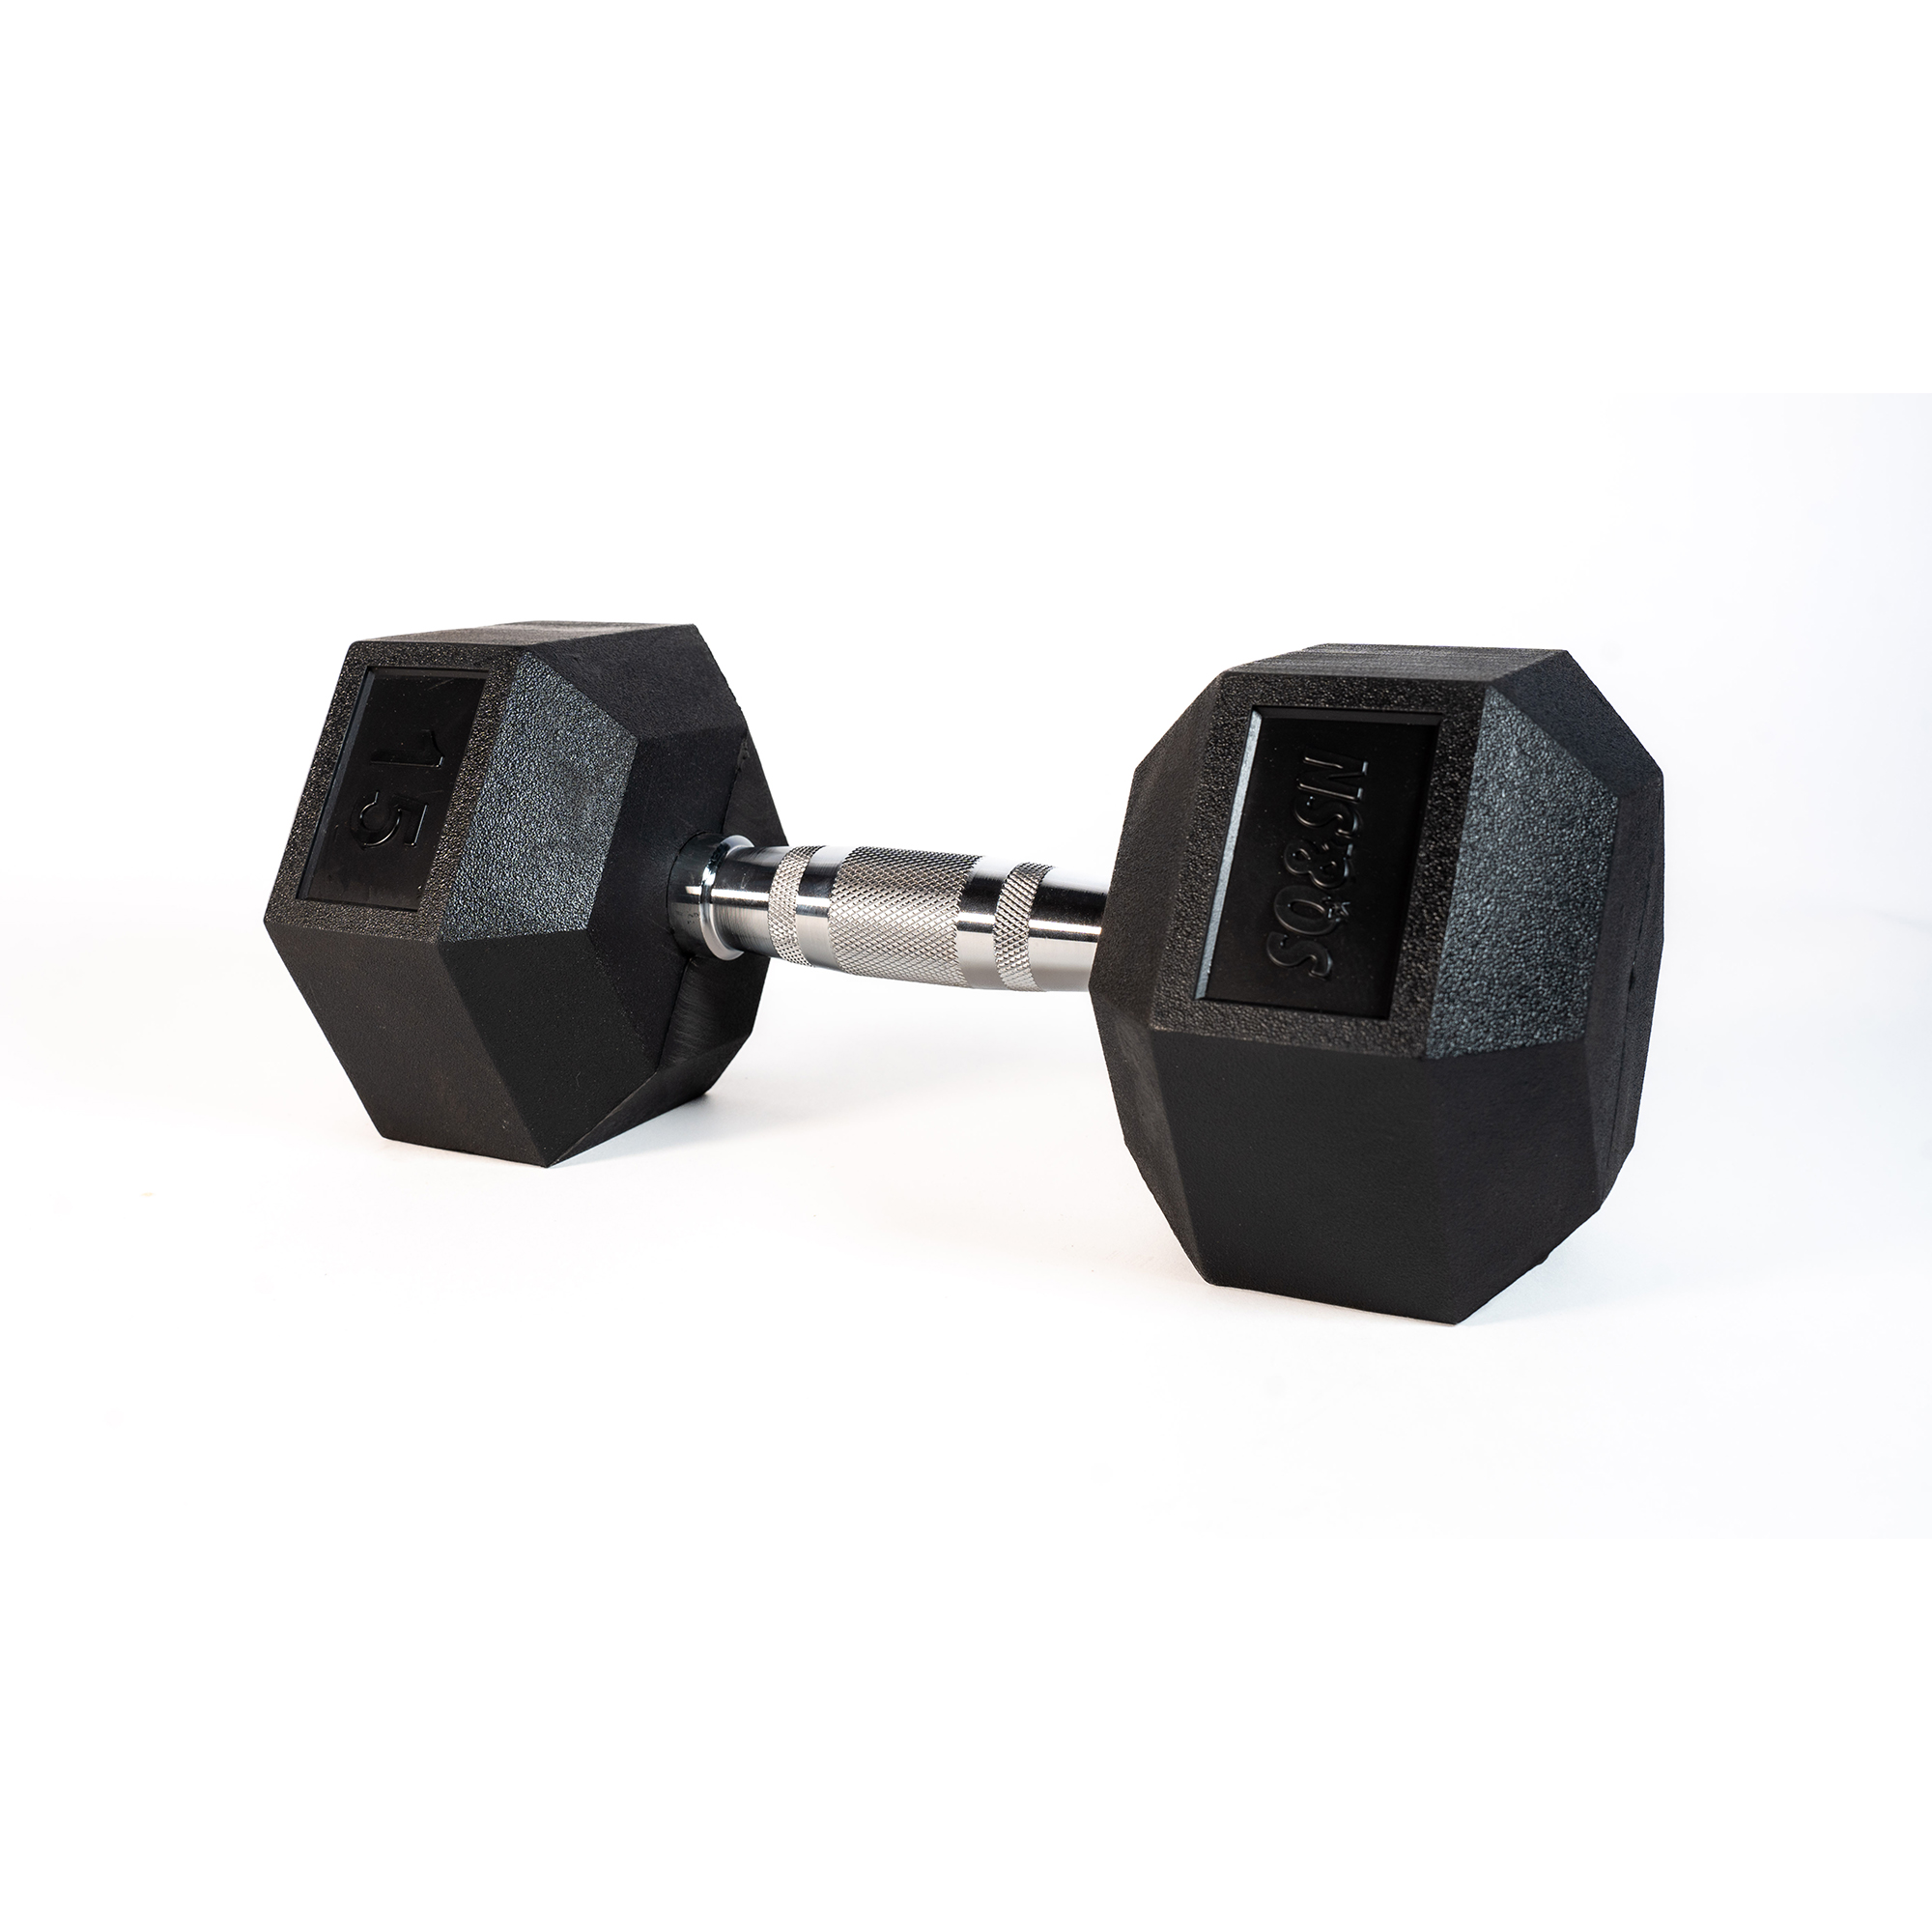 SQ&amp;SN Hexagon Håndvægt (15 kg) med forkromet greb. Udstyr til crossfit træning, styrketræning og funktionel træning